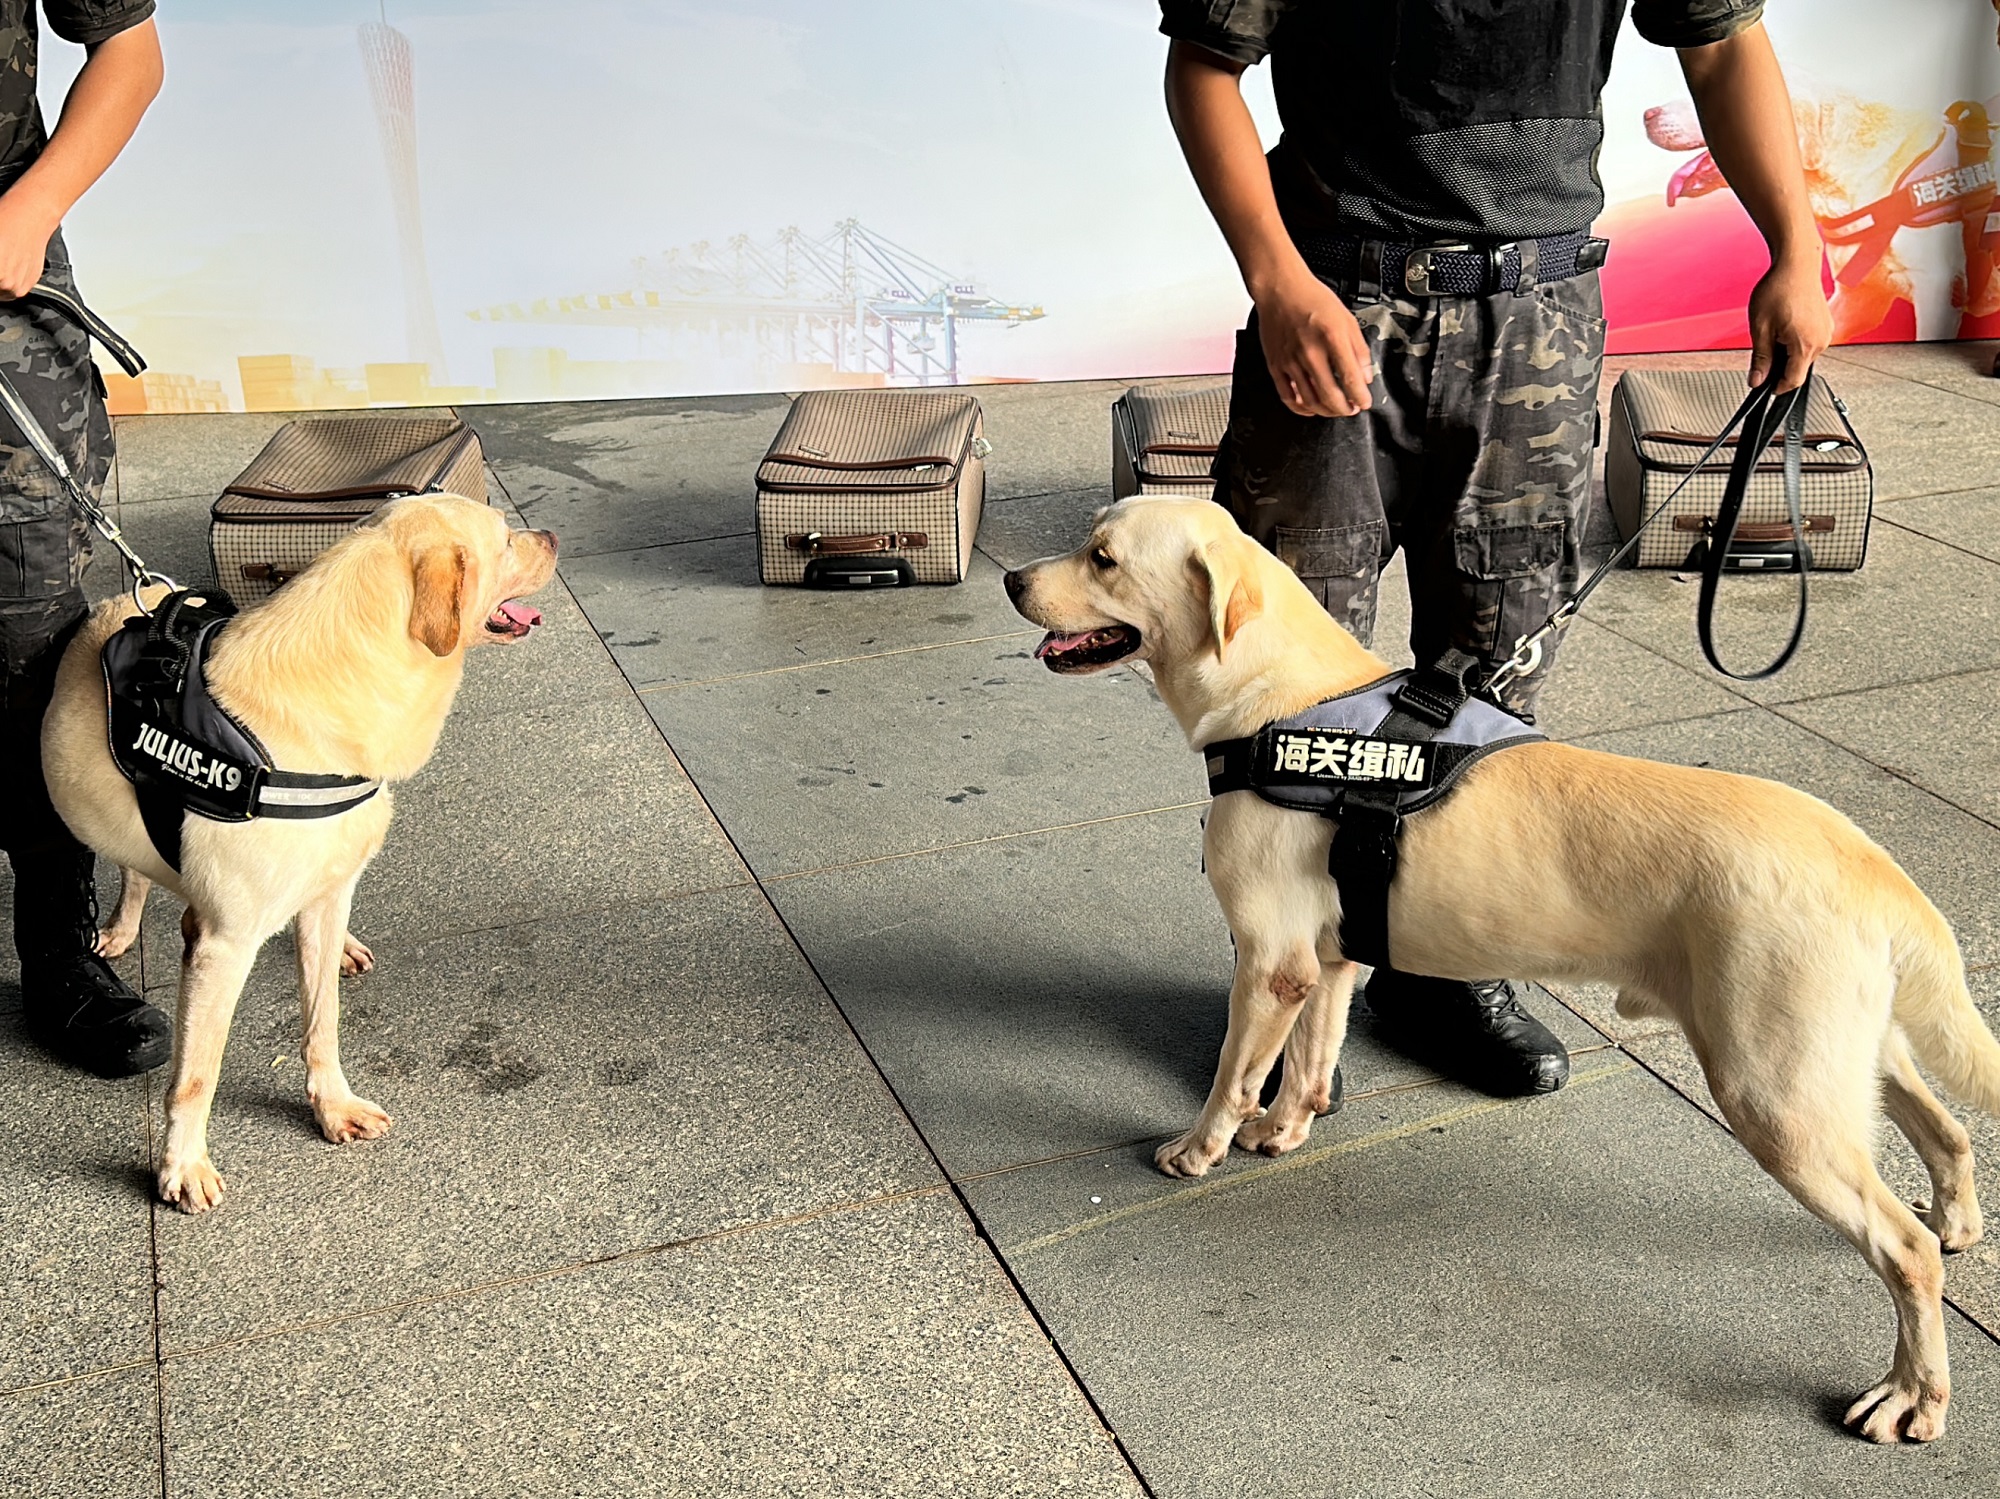 训导员带着缉毒犬金莱尔（左）和卡尔（右）上场，演示缉毒犬箱包搜查等训练科目。周睿 摄